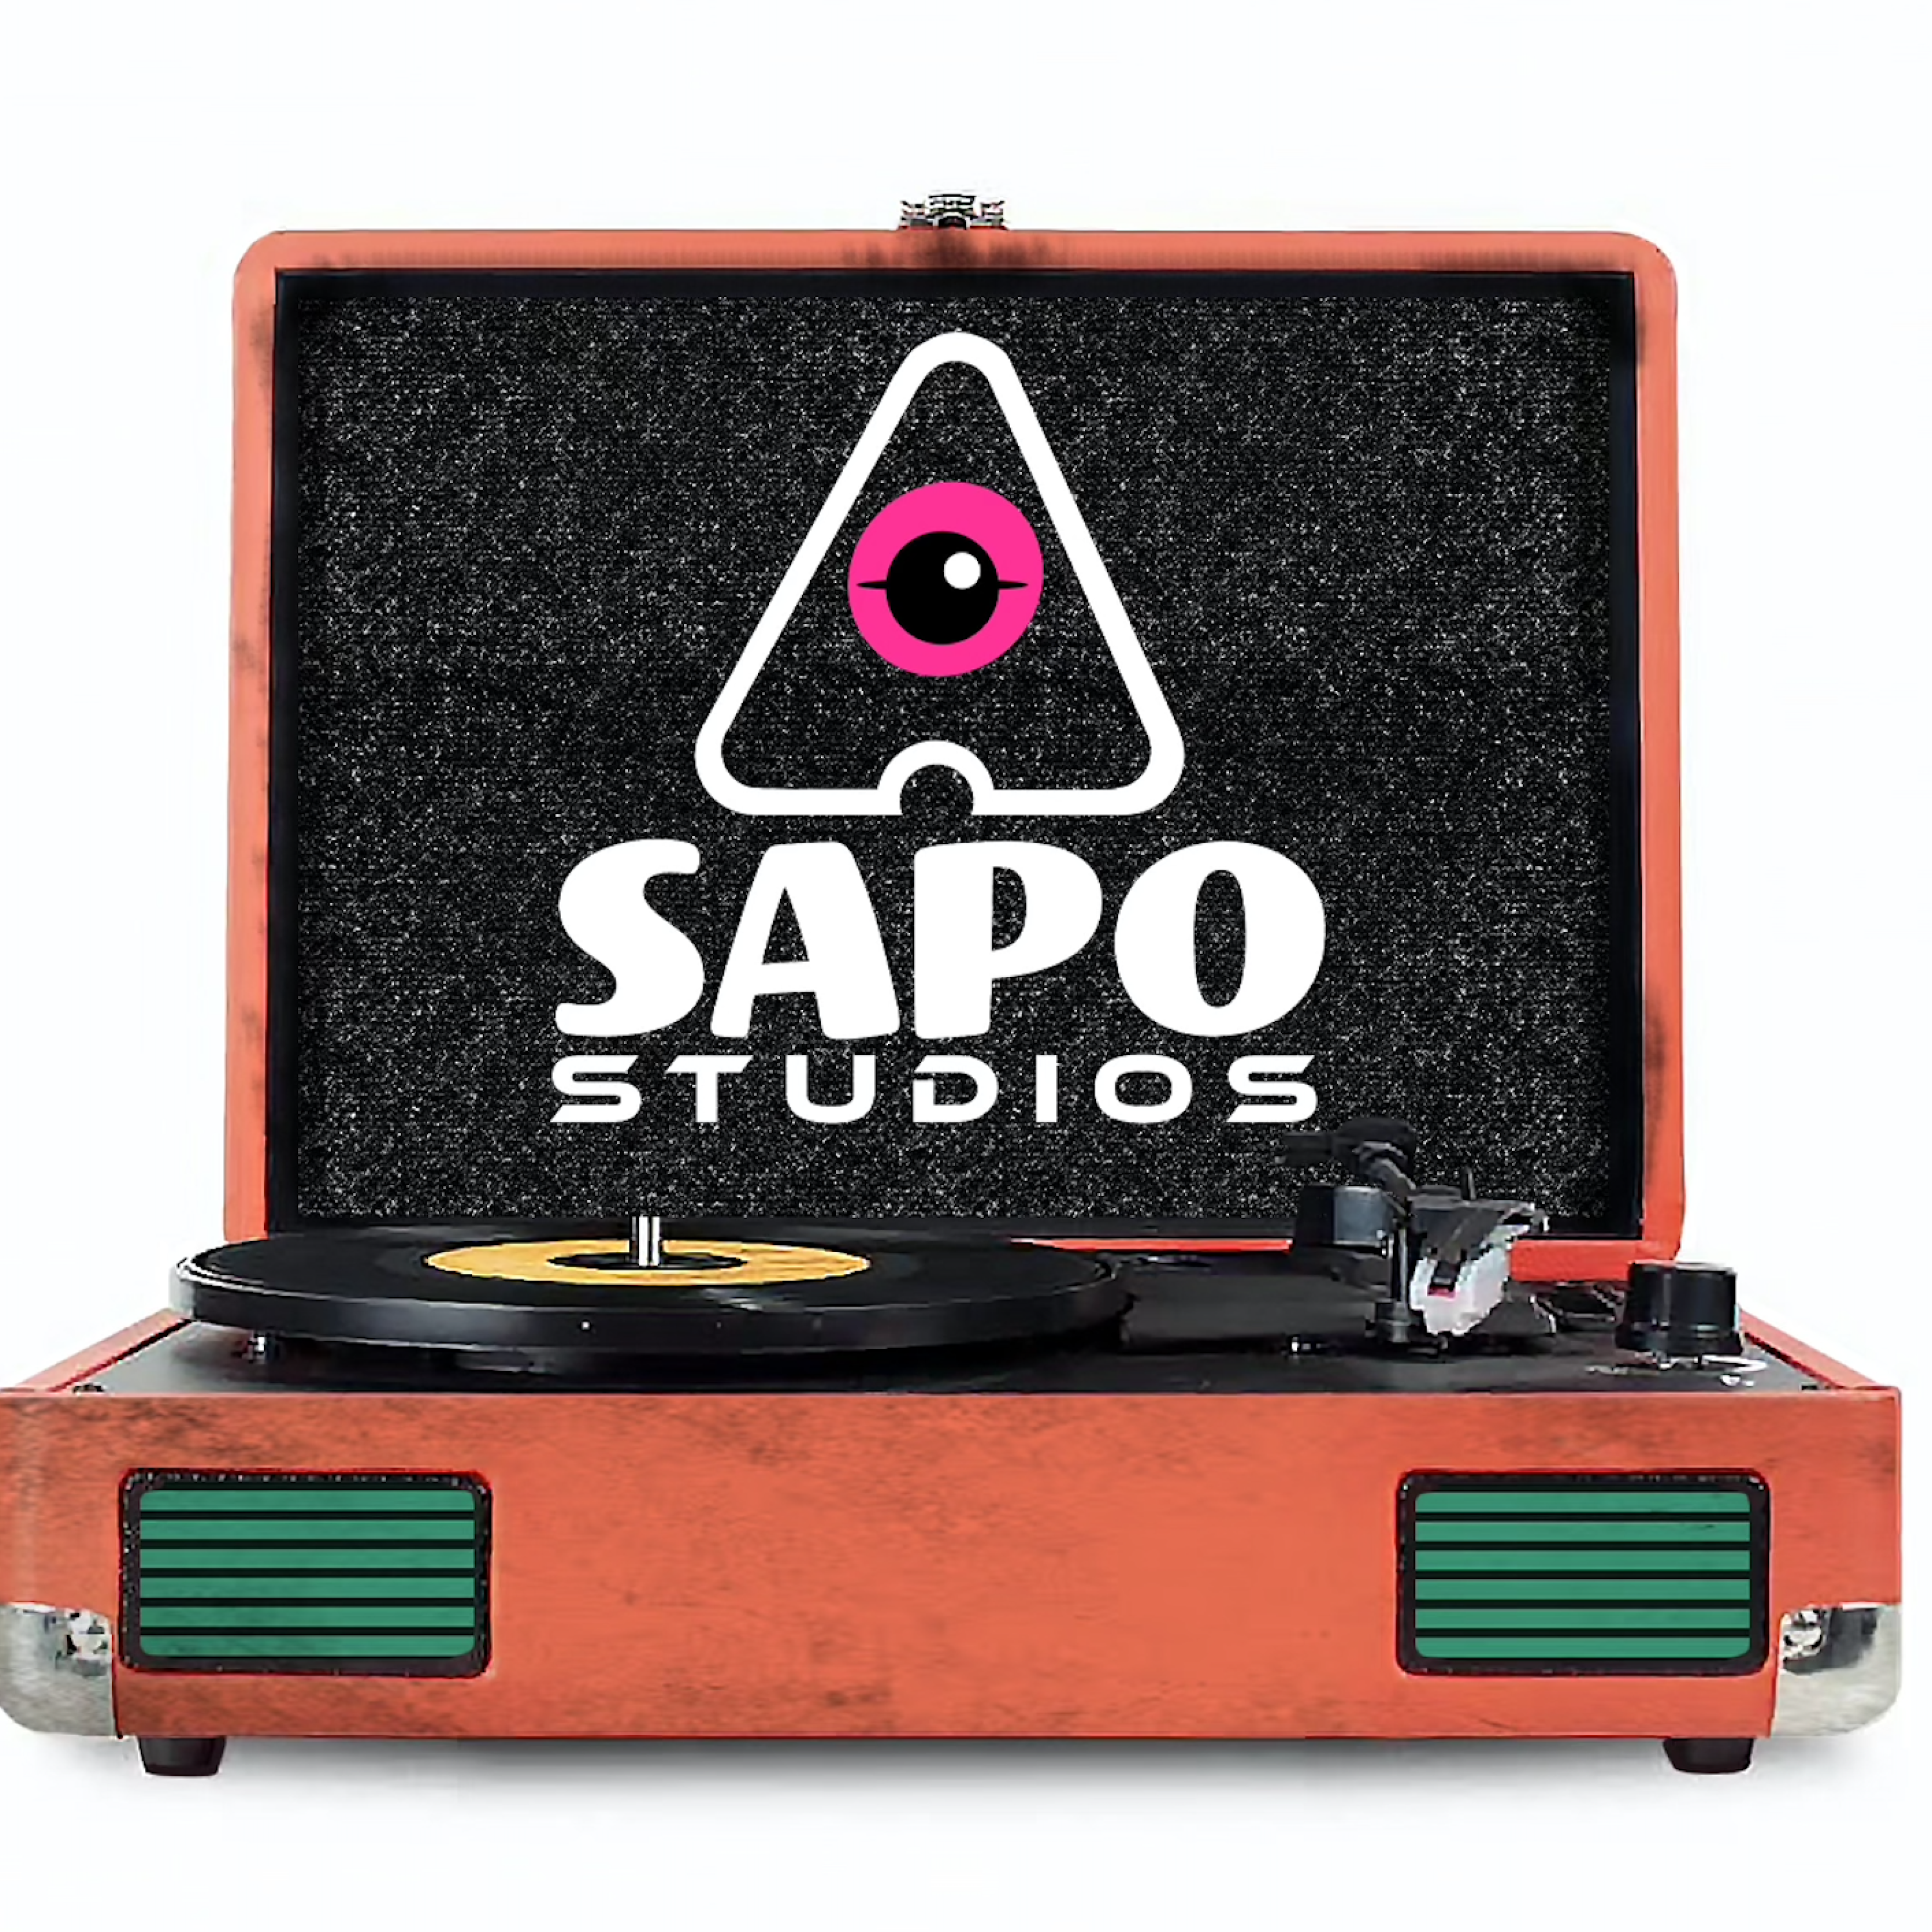 Sapo Studios